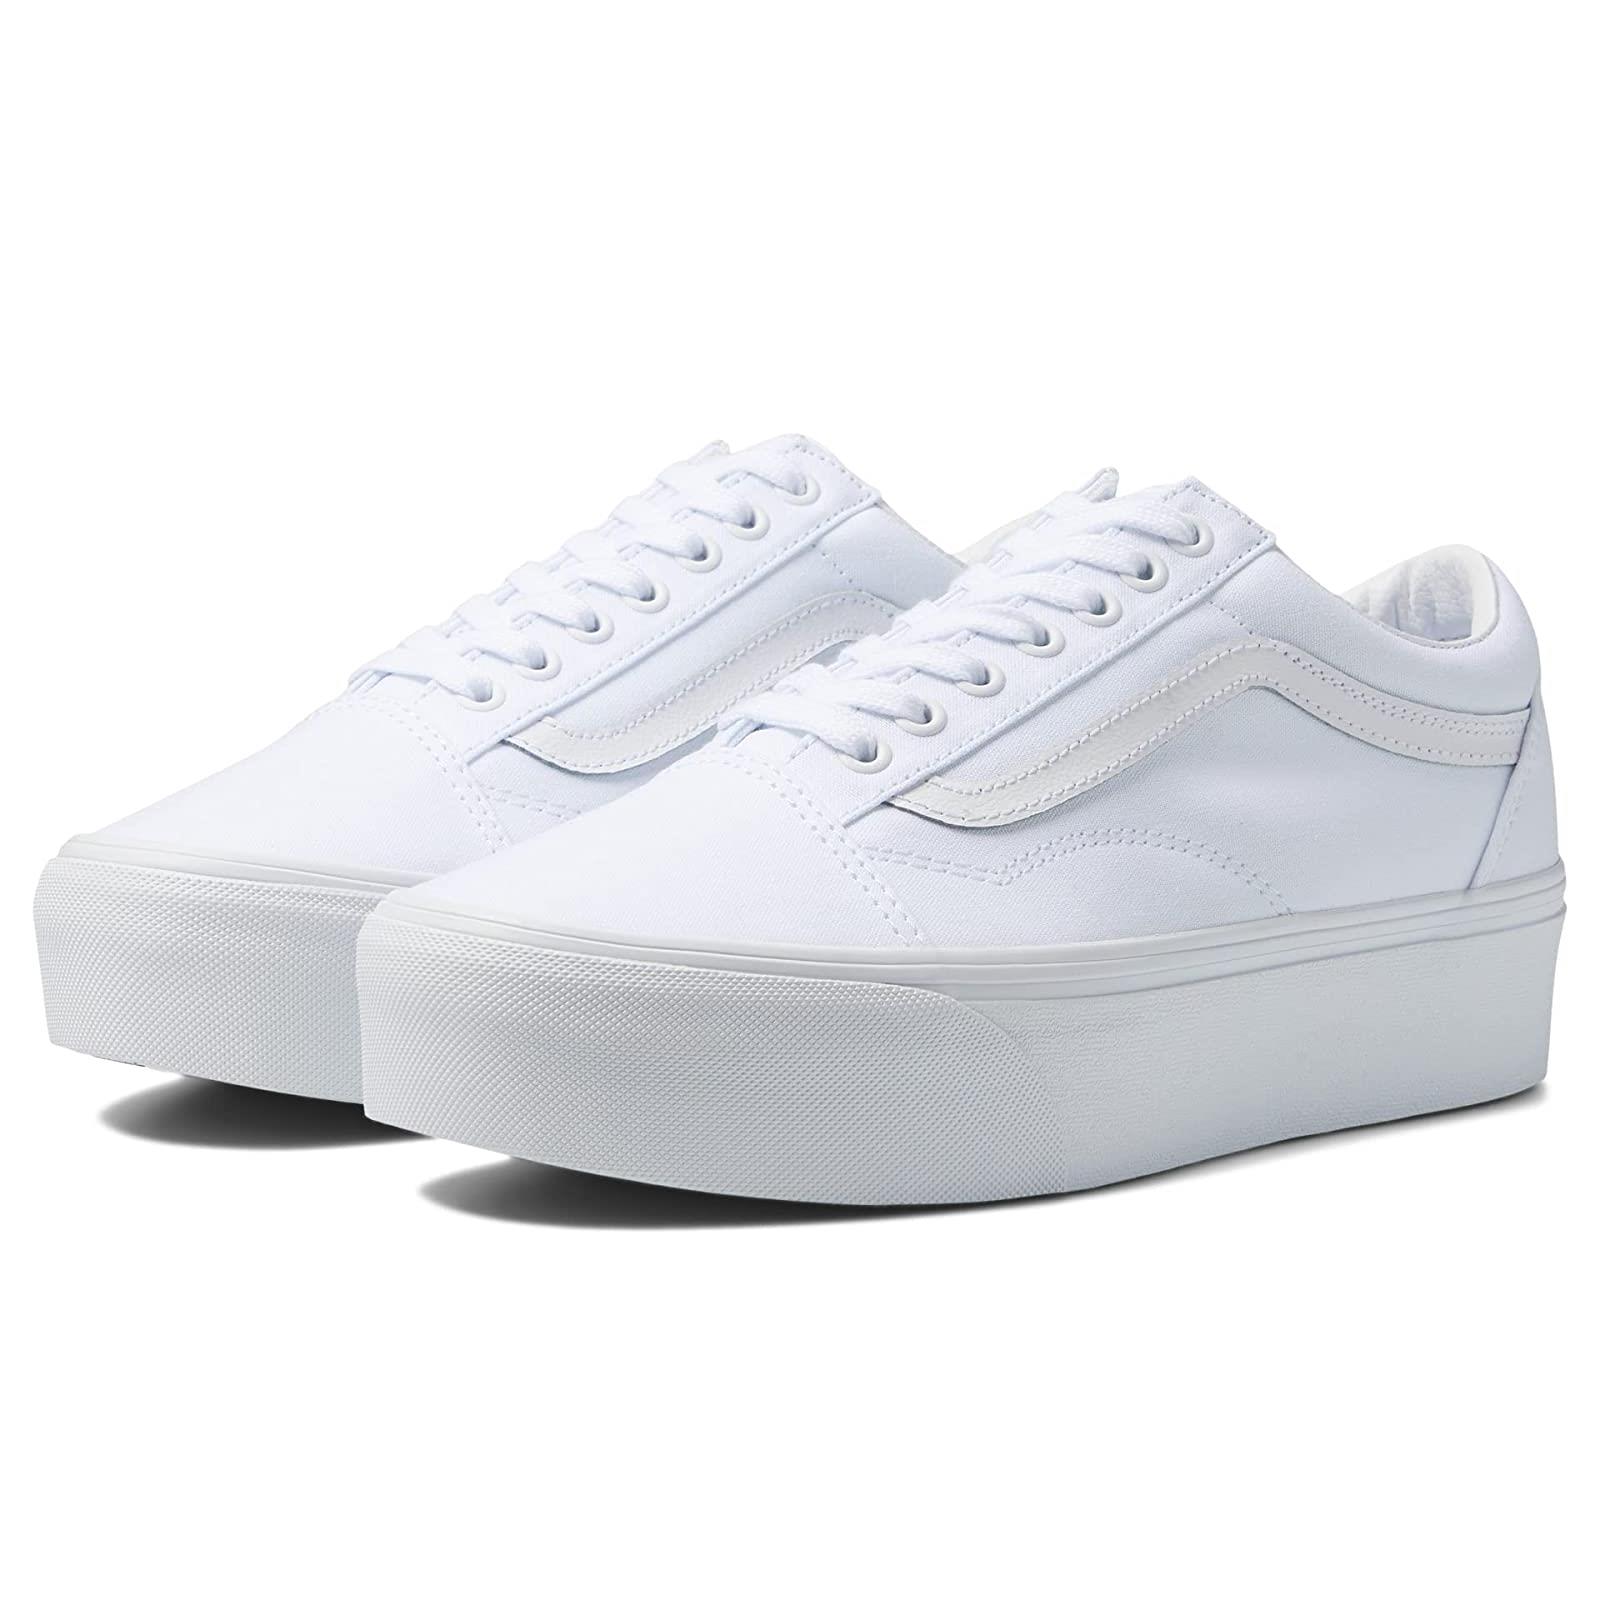 Unisex Sneakers Athletic Shoes Vans Old Skool Stackform True White